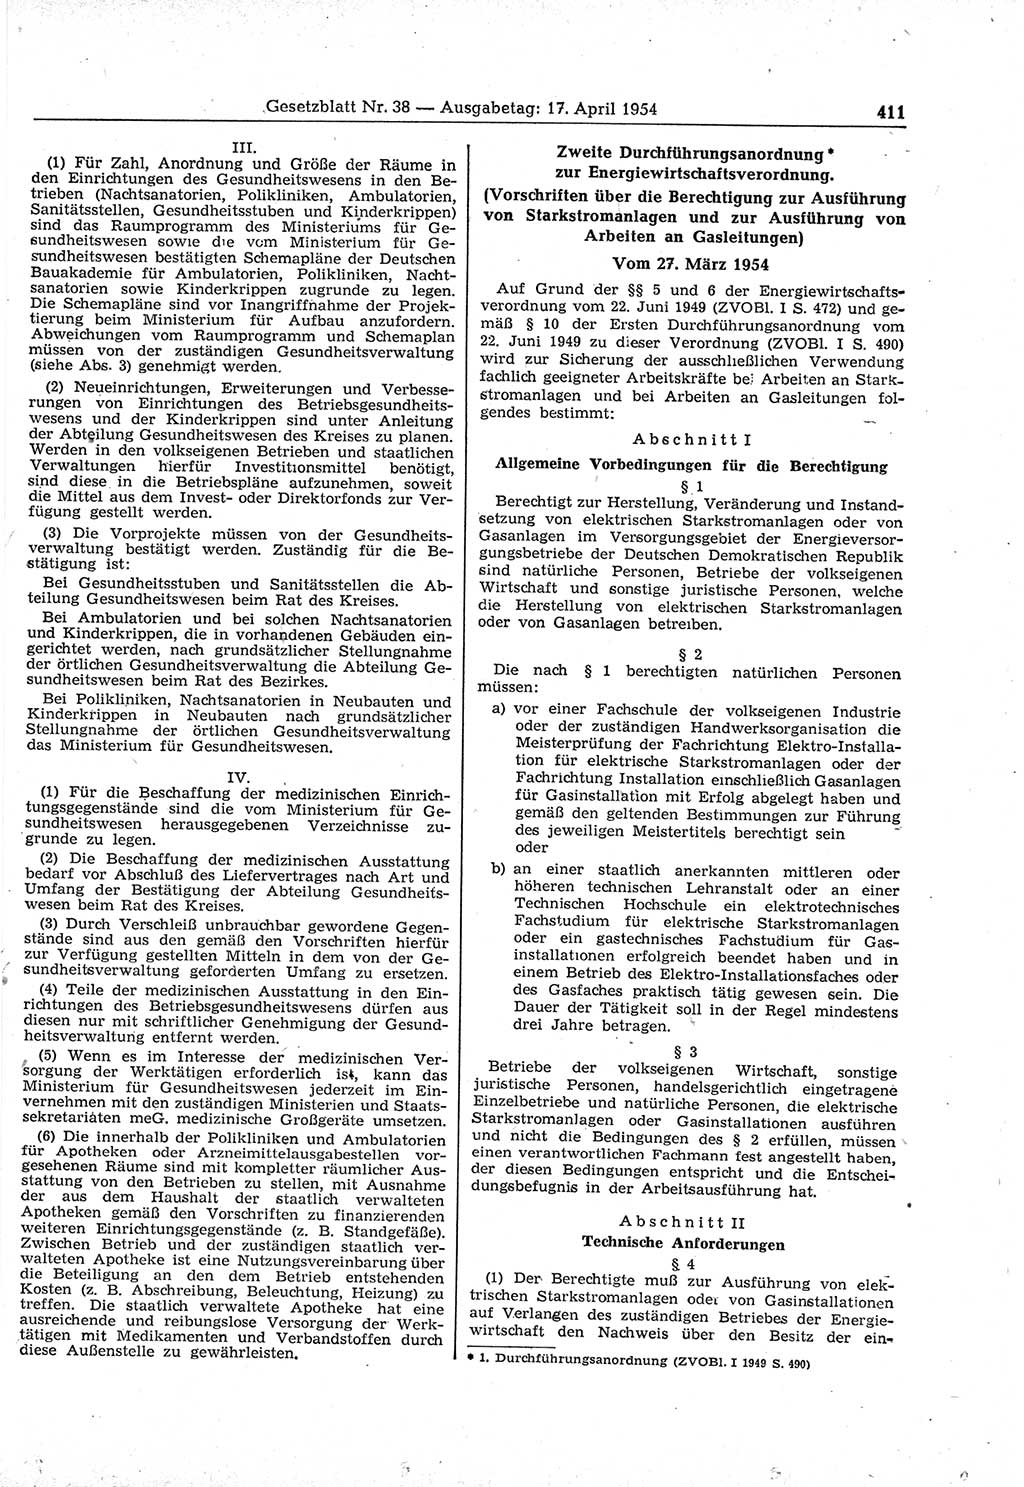 Gesetzblatt (GBl.) der Deutschen Demokratischen Republik (DDR) 1954, Seite 411 (GBl. DDR 1954, S. 411)